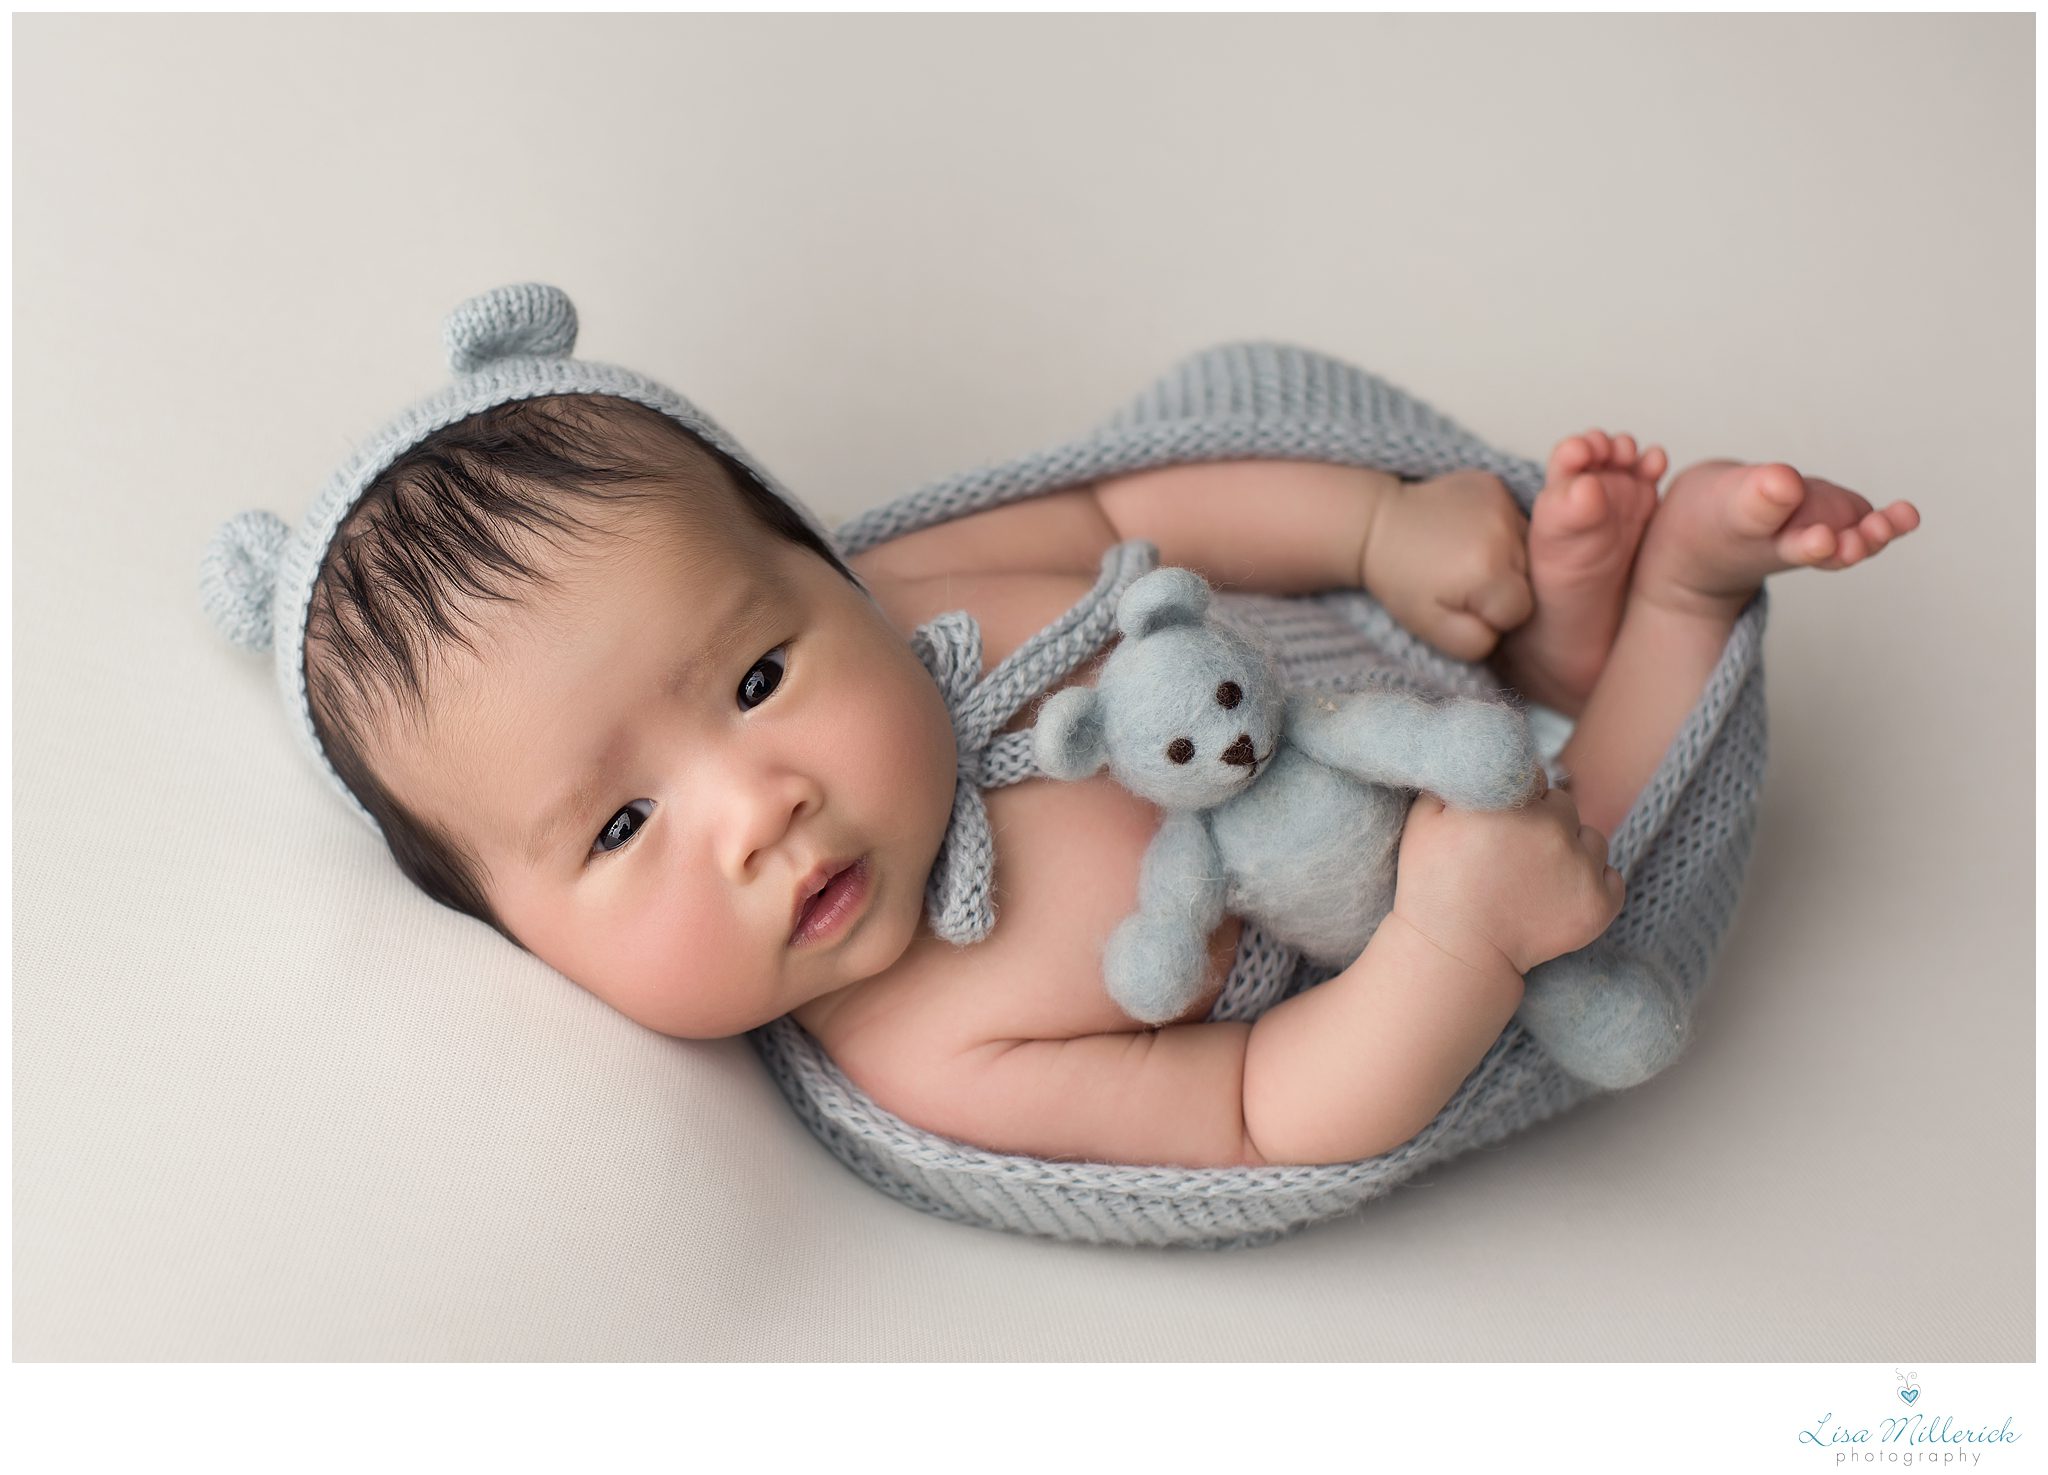 6 week old baby boy newborn teddy bear blue connecticut